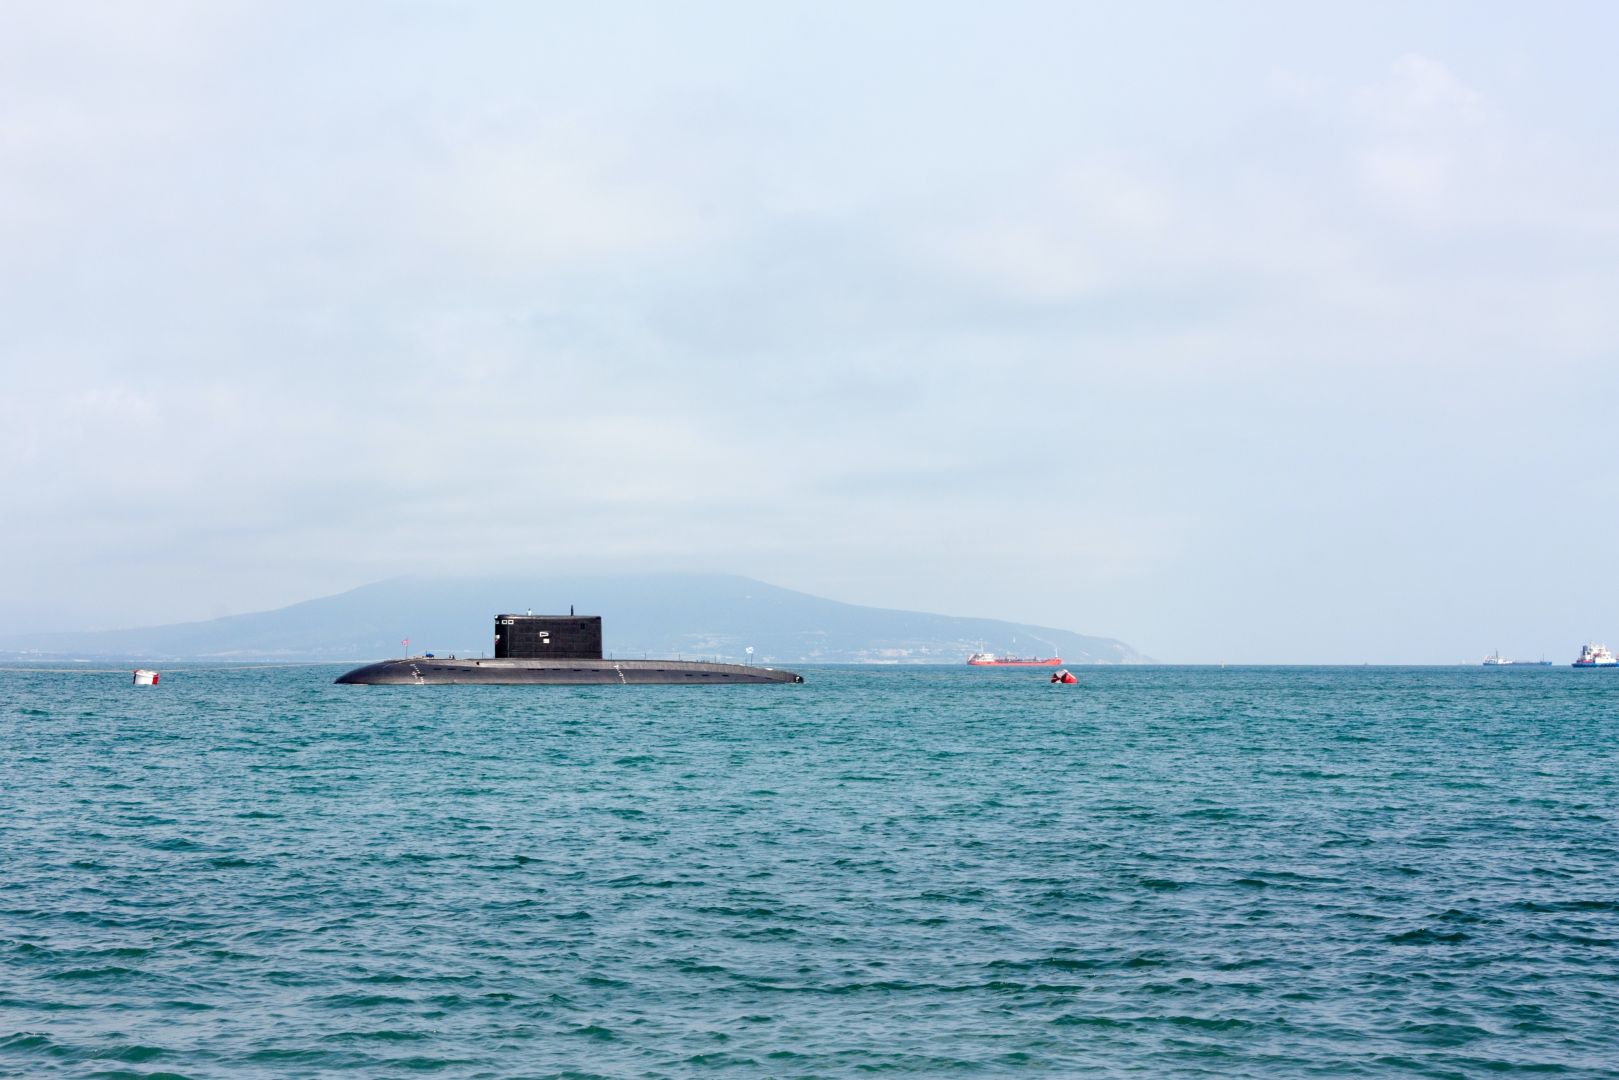 Türkei startet nationales Projekts zur Herstellung von U-Booten 
​